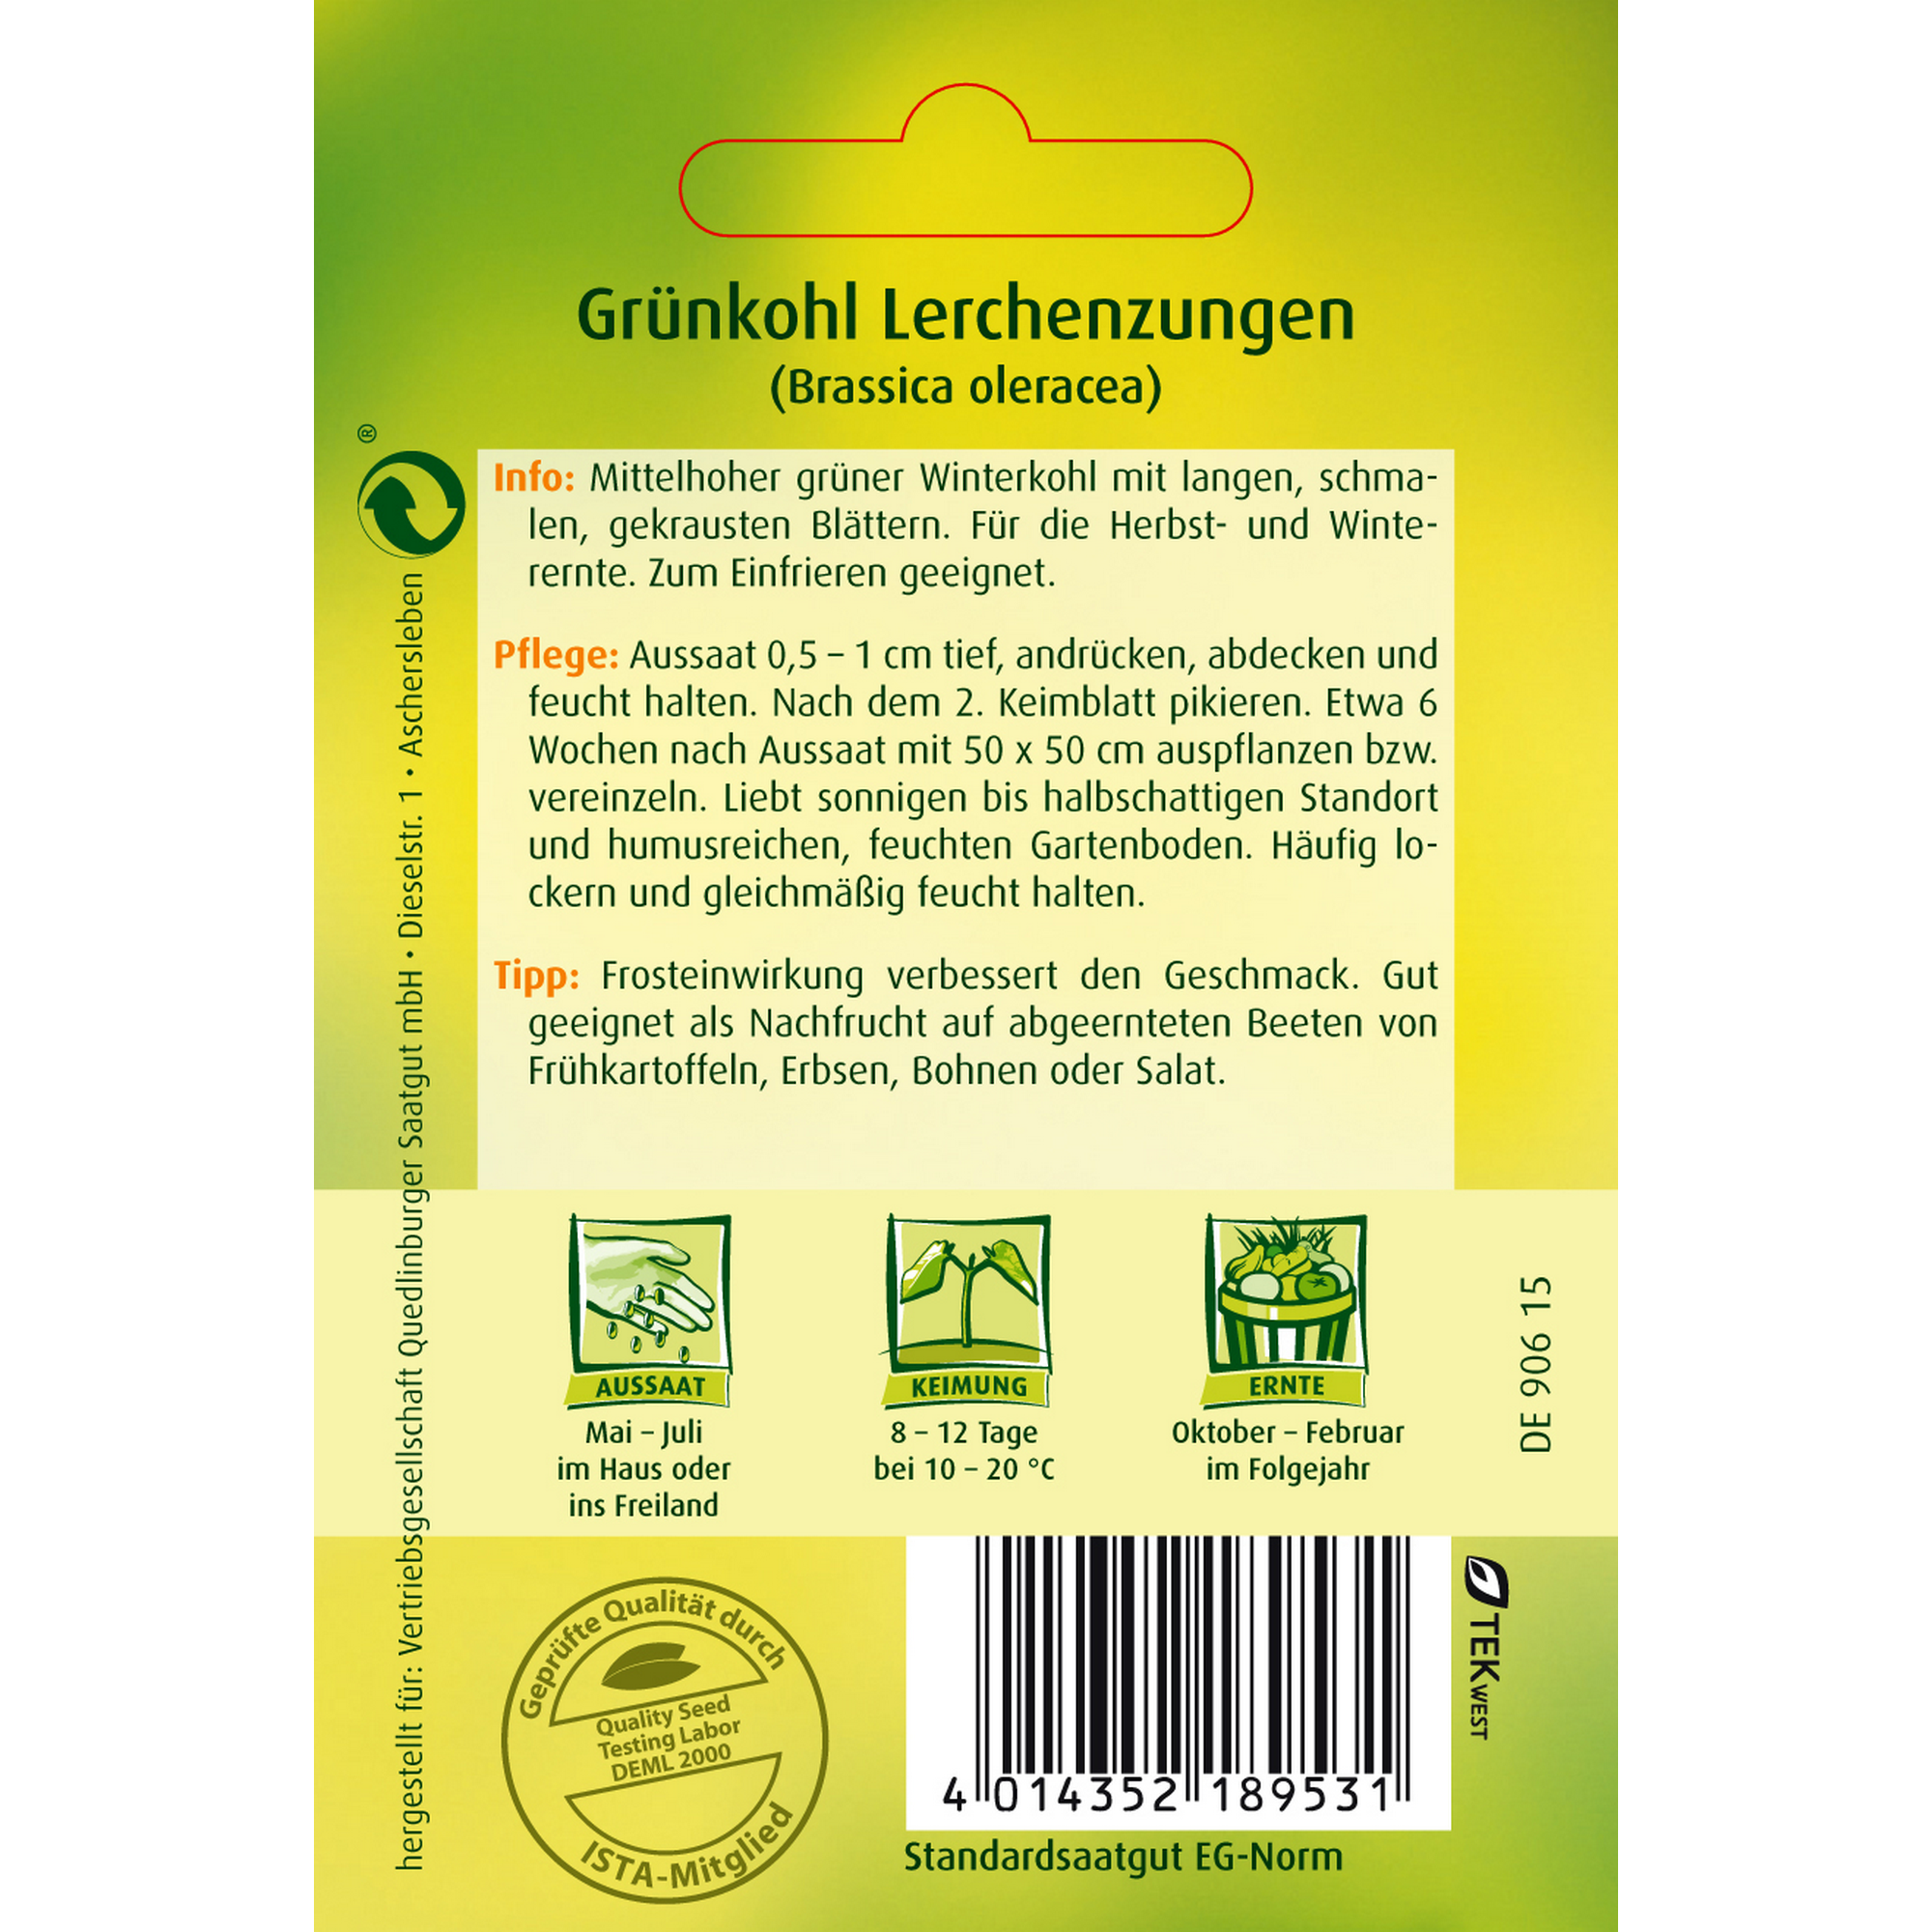 Grünkohl 'Lerchenzungen' + product picture